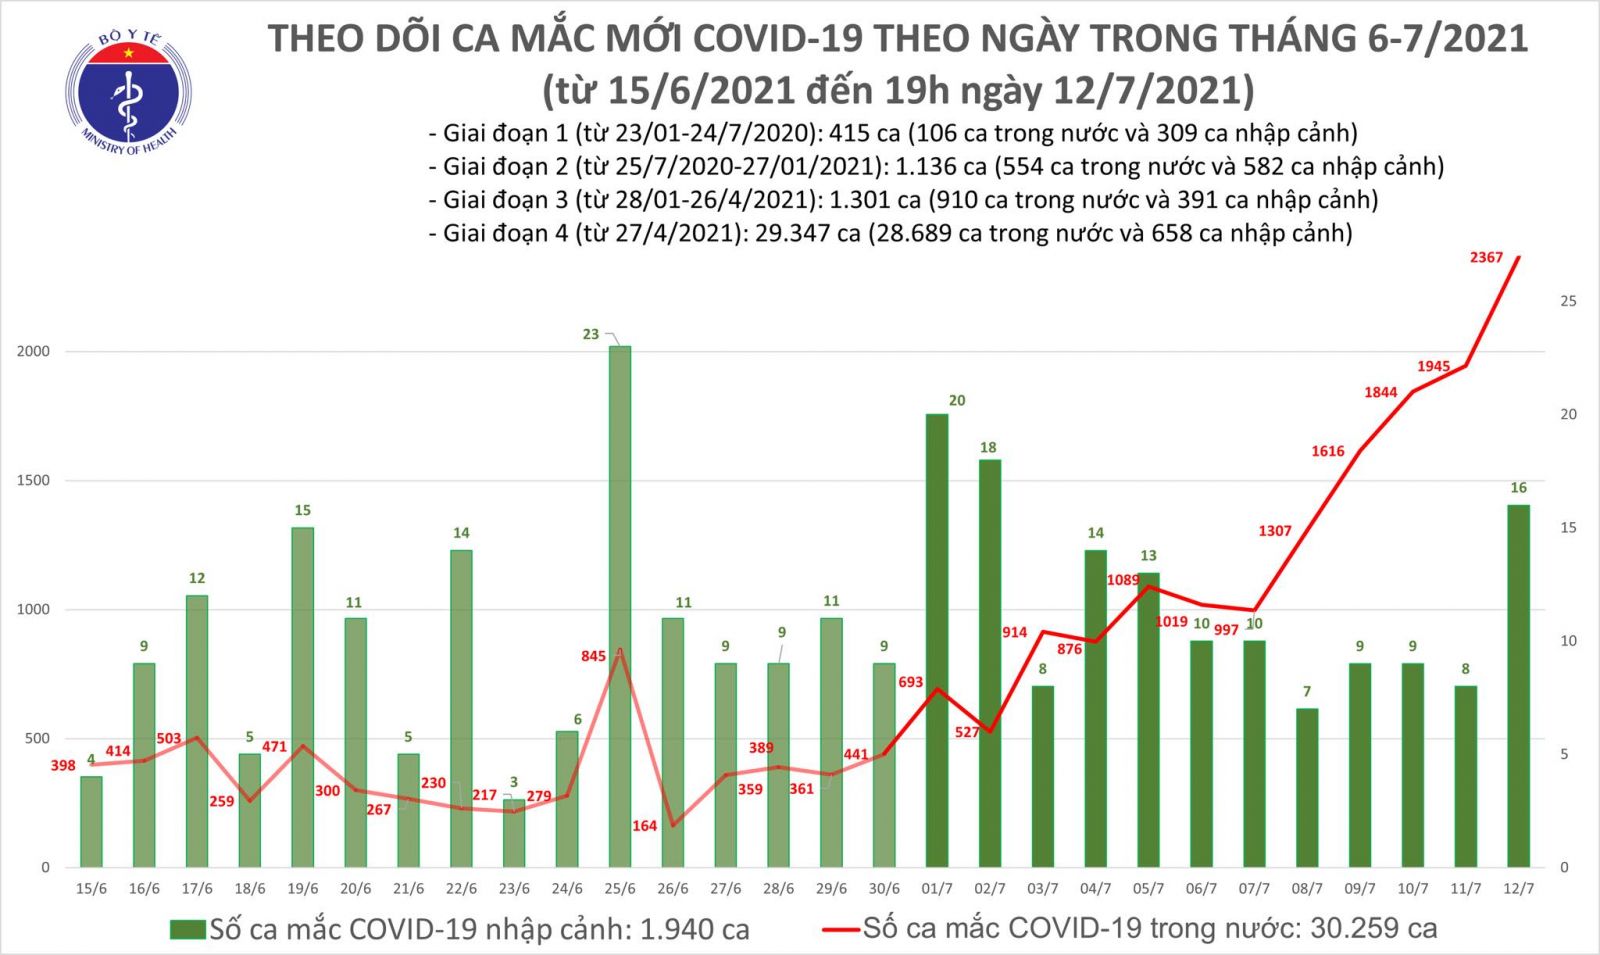 Tối 12/7: Thêm 609 ca mắc COVID-19, nâng tổng số mắc trong ngày lên 2.367 ca